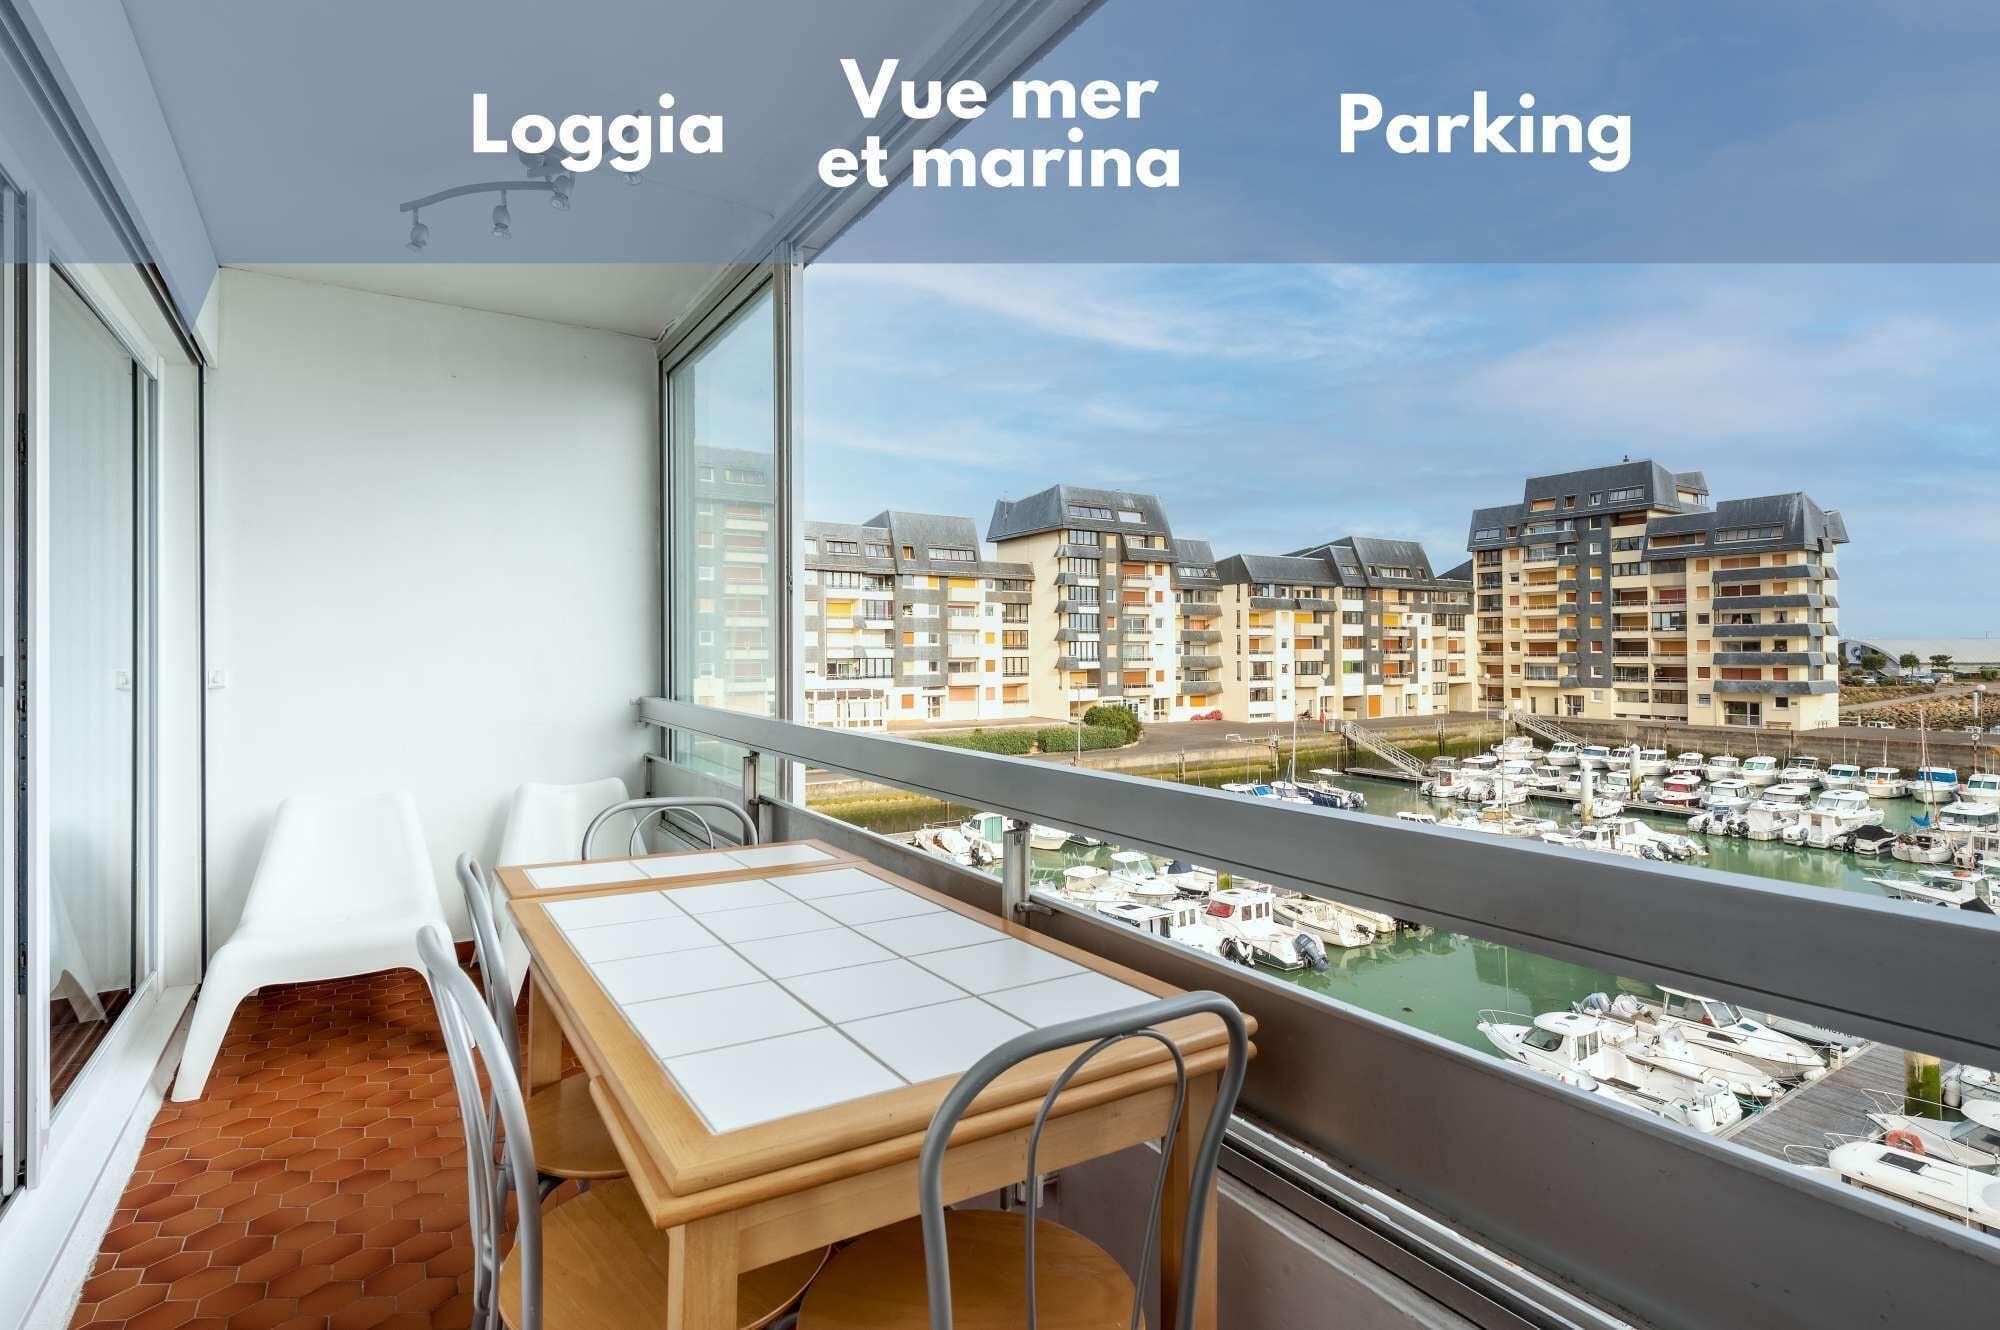 Pet Friendly Appartement Vue Mer et Marina Loggia Parking